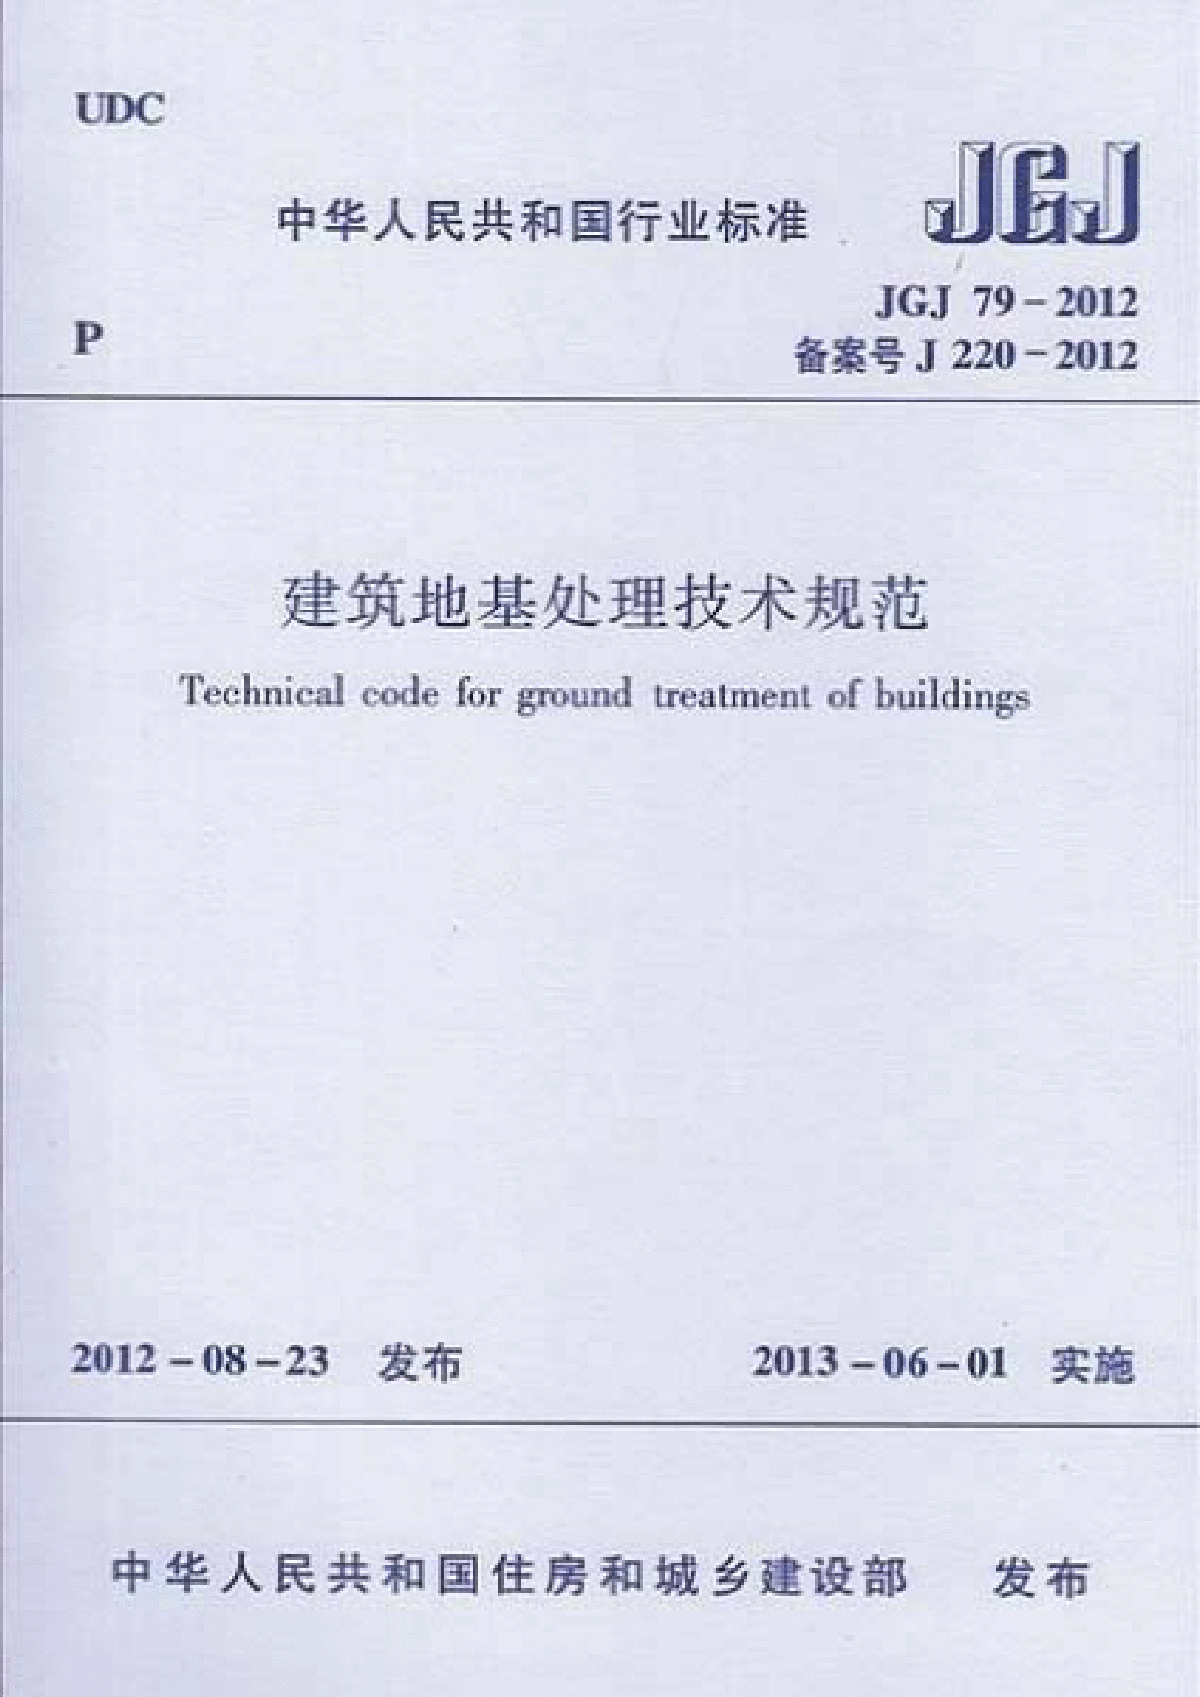 JGJ79 2012《建筑地基处理技术规范》